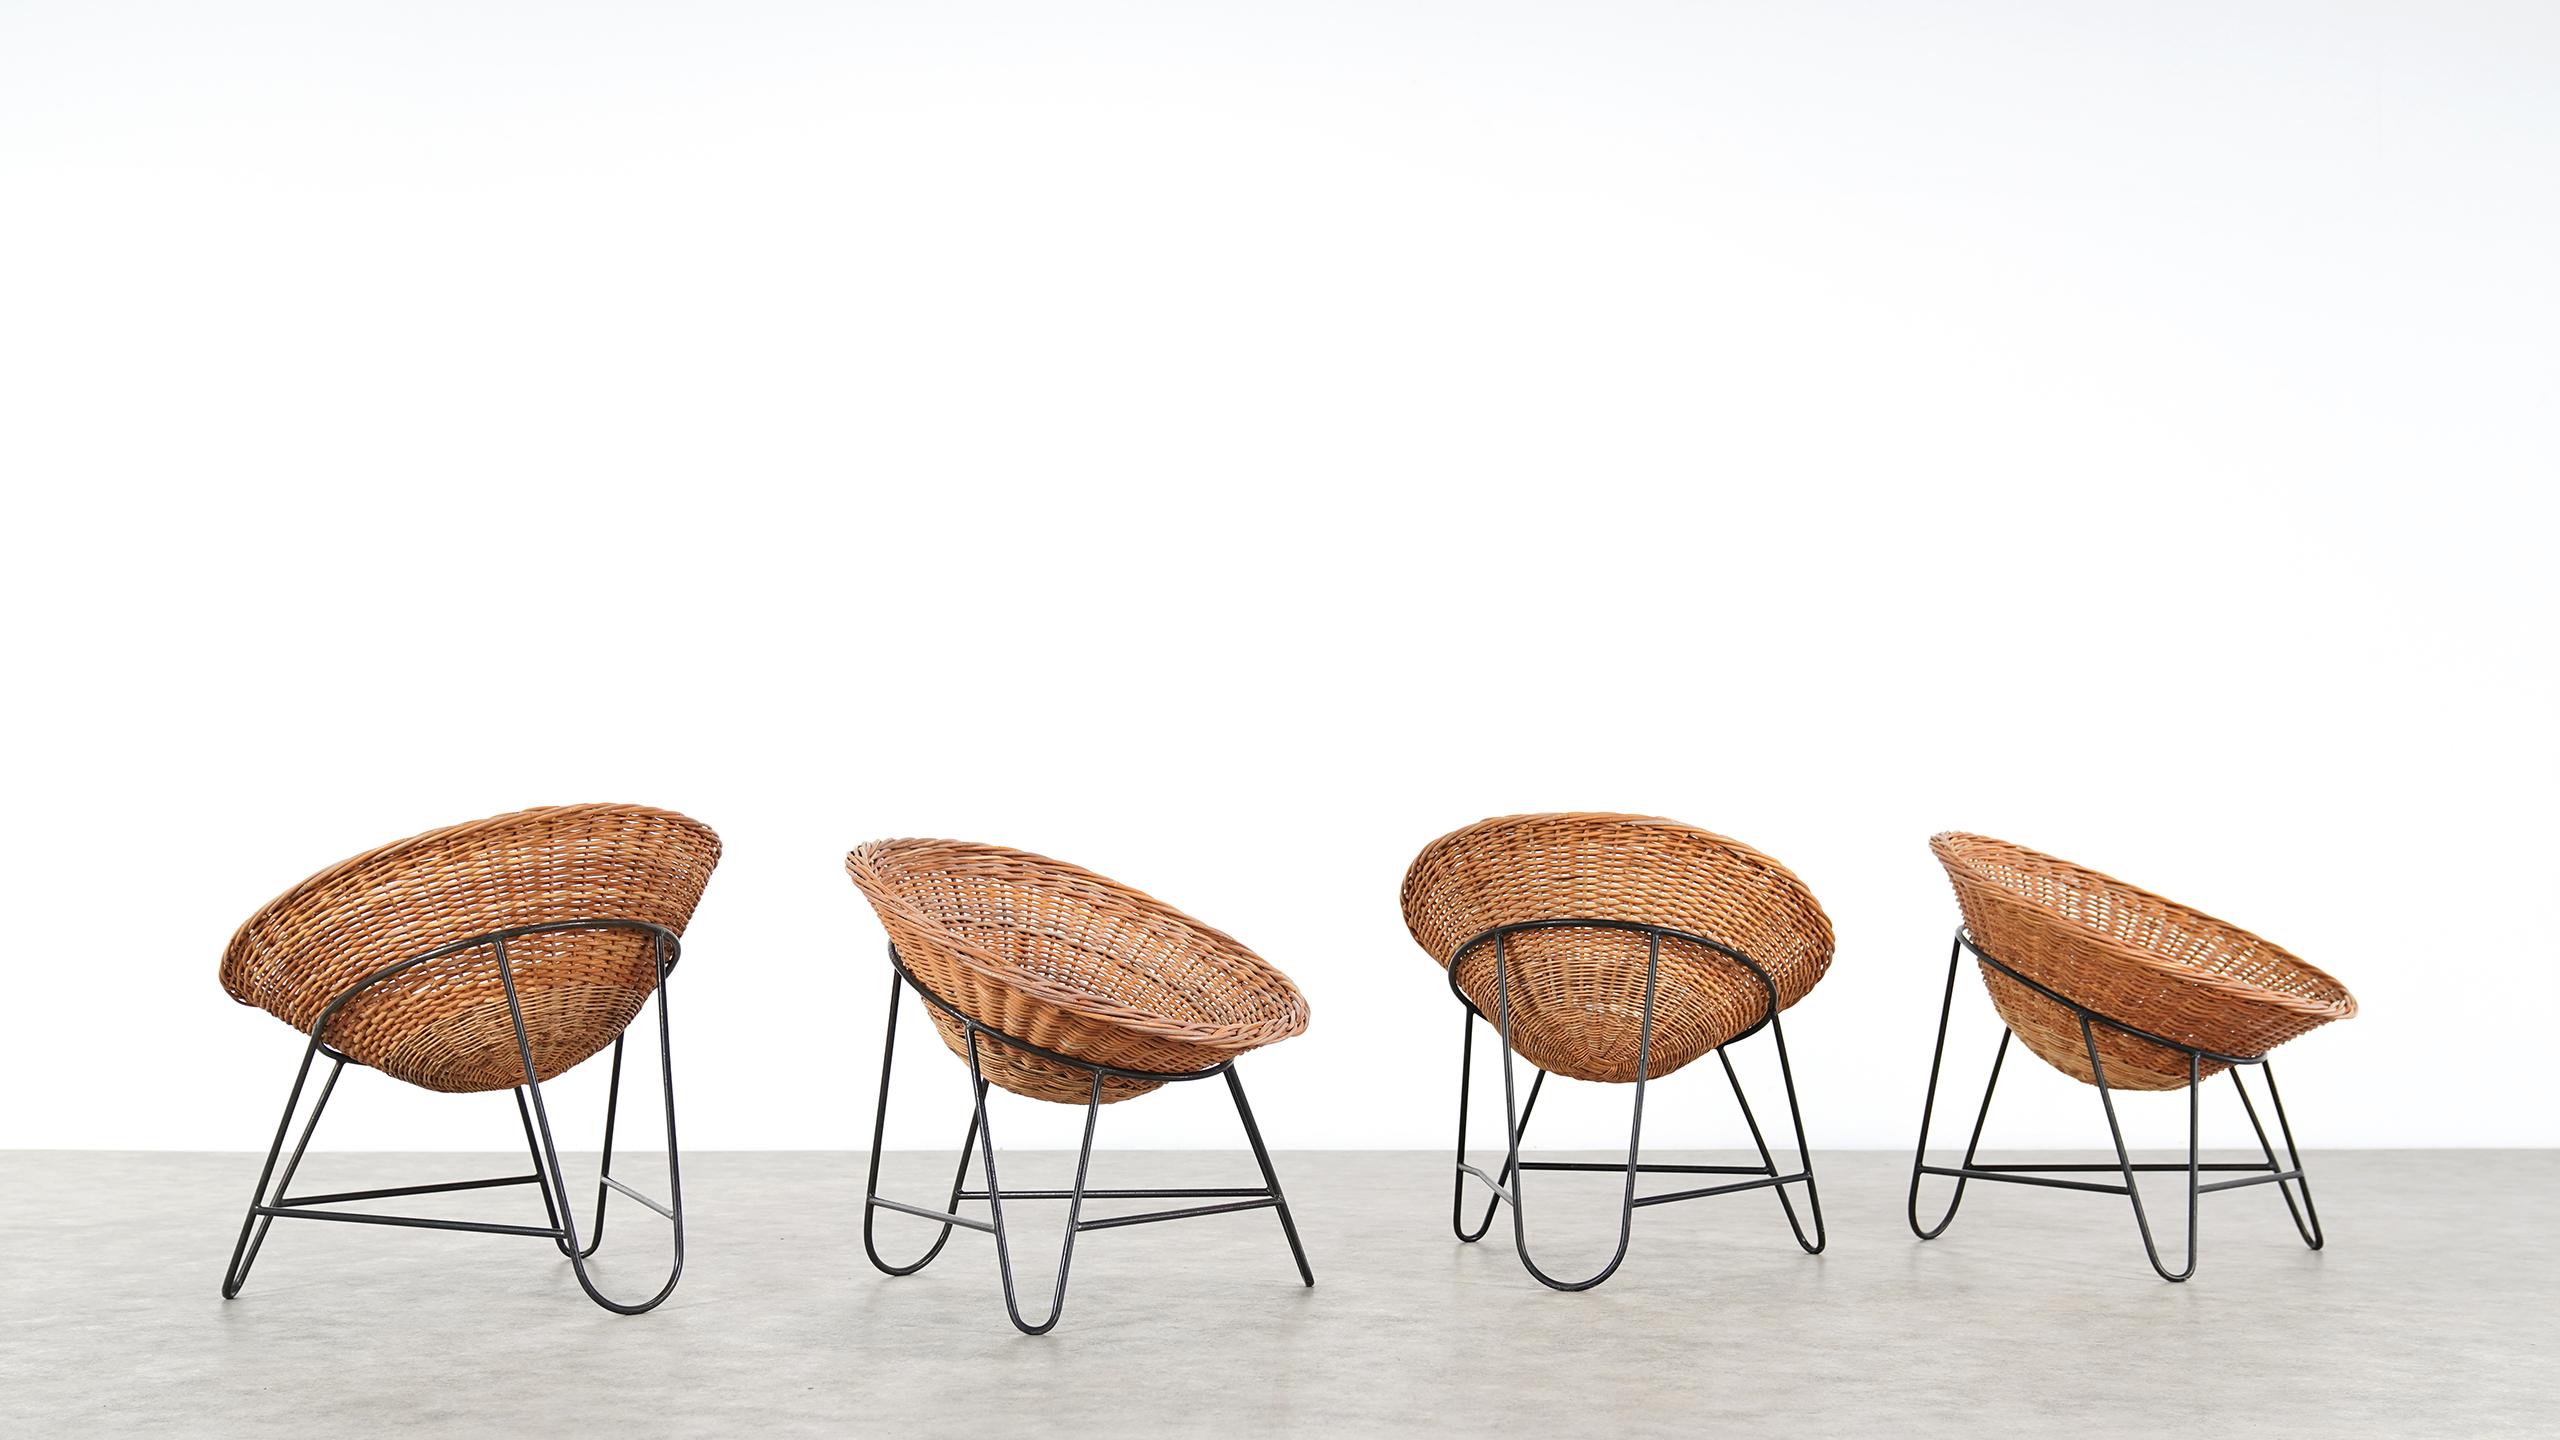 4 Modernist Wicker Chair in style of Mathieu Matégot circa 1950, France Tripod 1